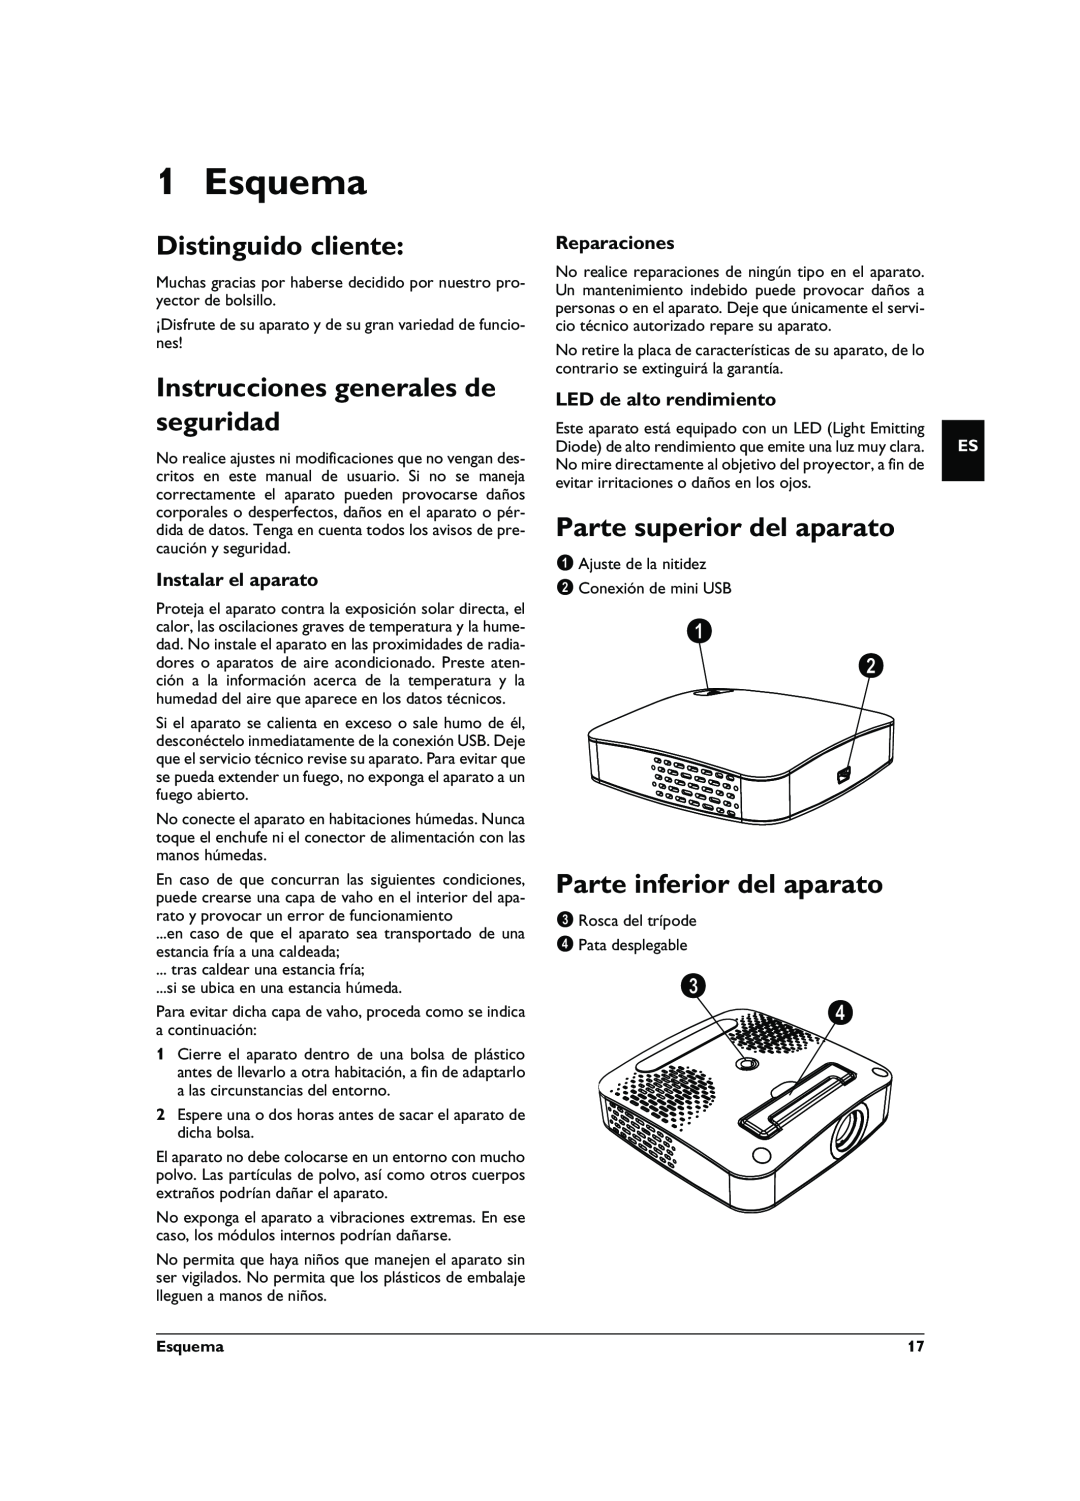 Philips PPX1020 user manual Esquema, Distinguido cliente, Instrucciones generales de seguridad, Parte superior del aparato 